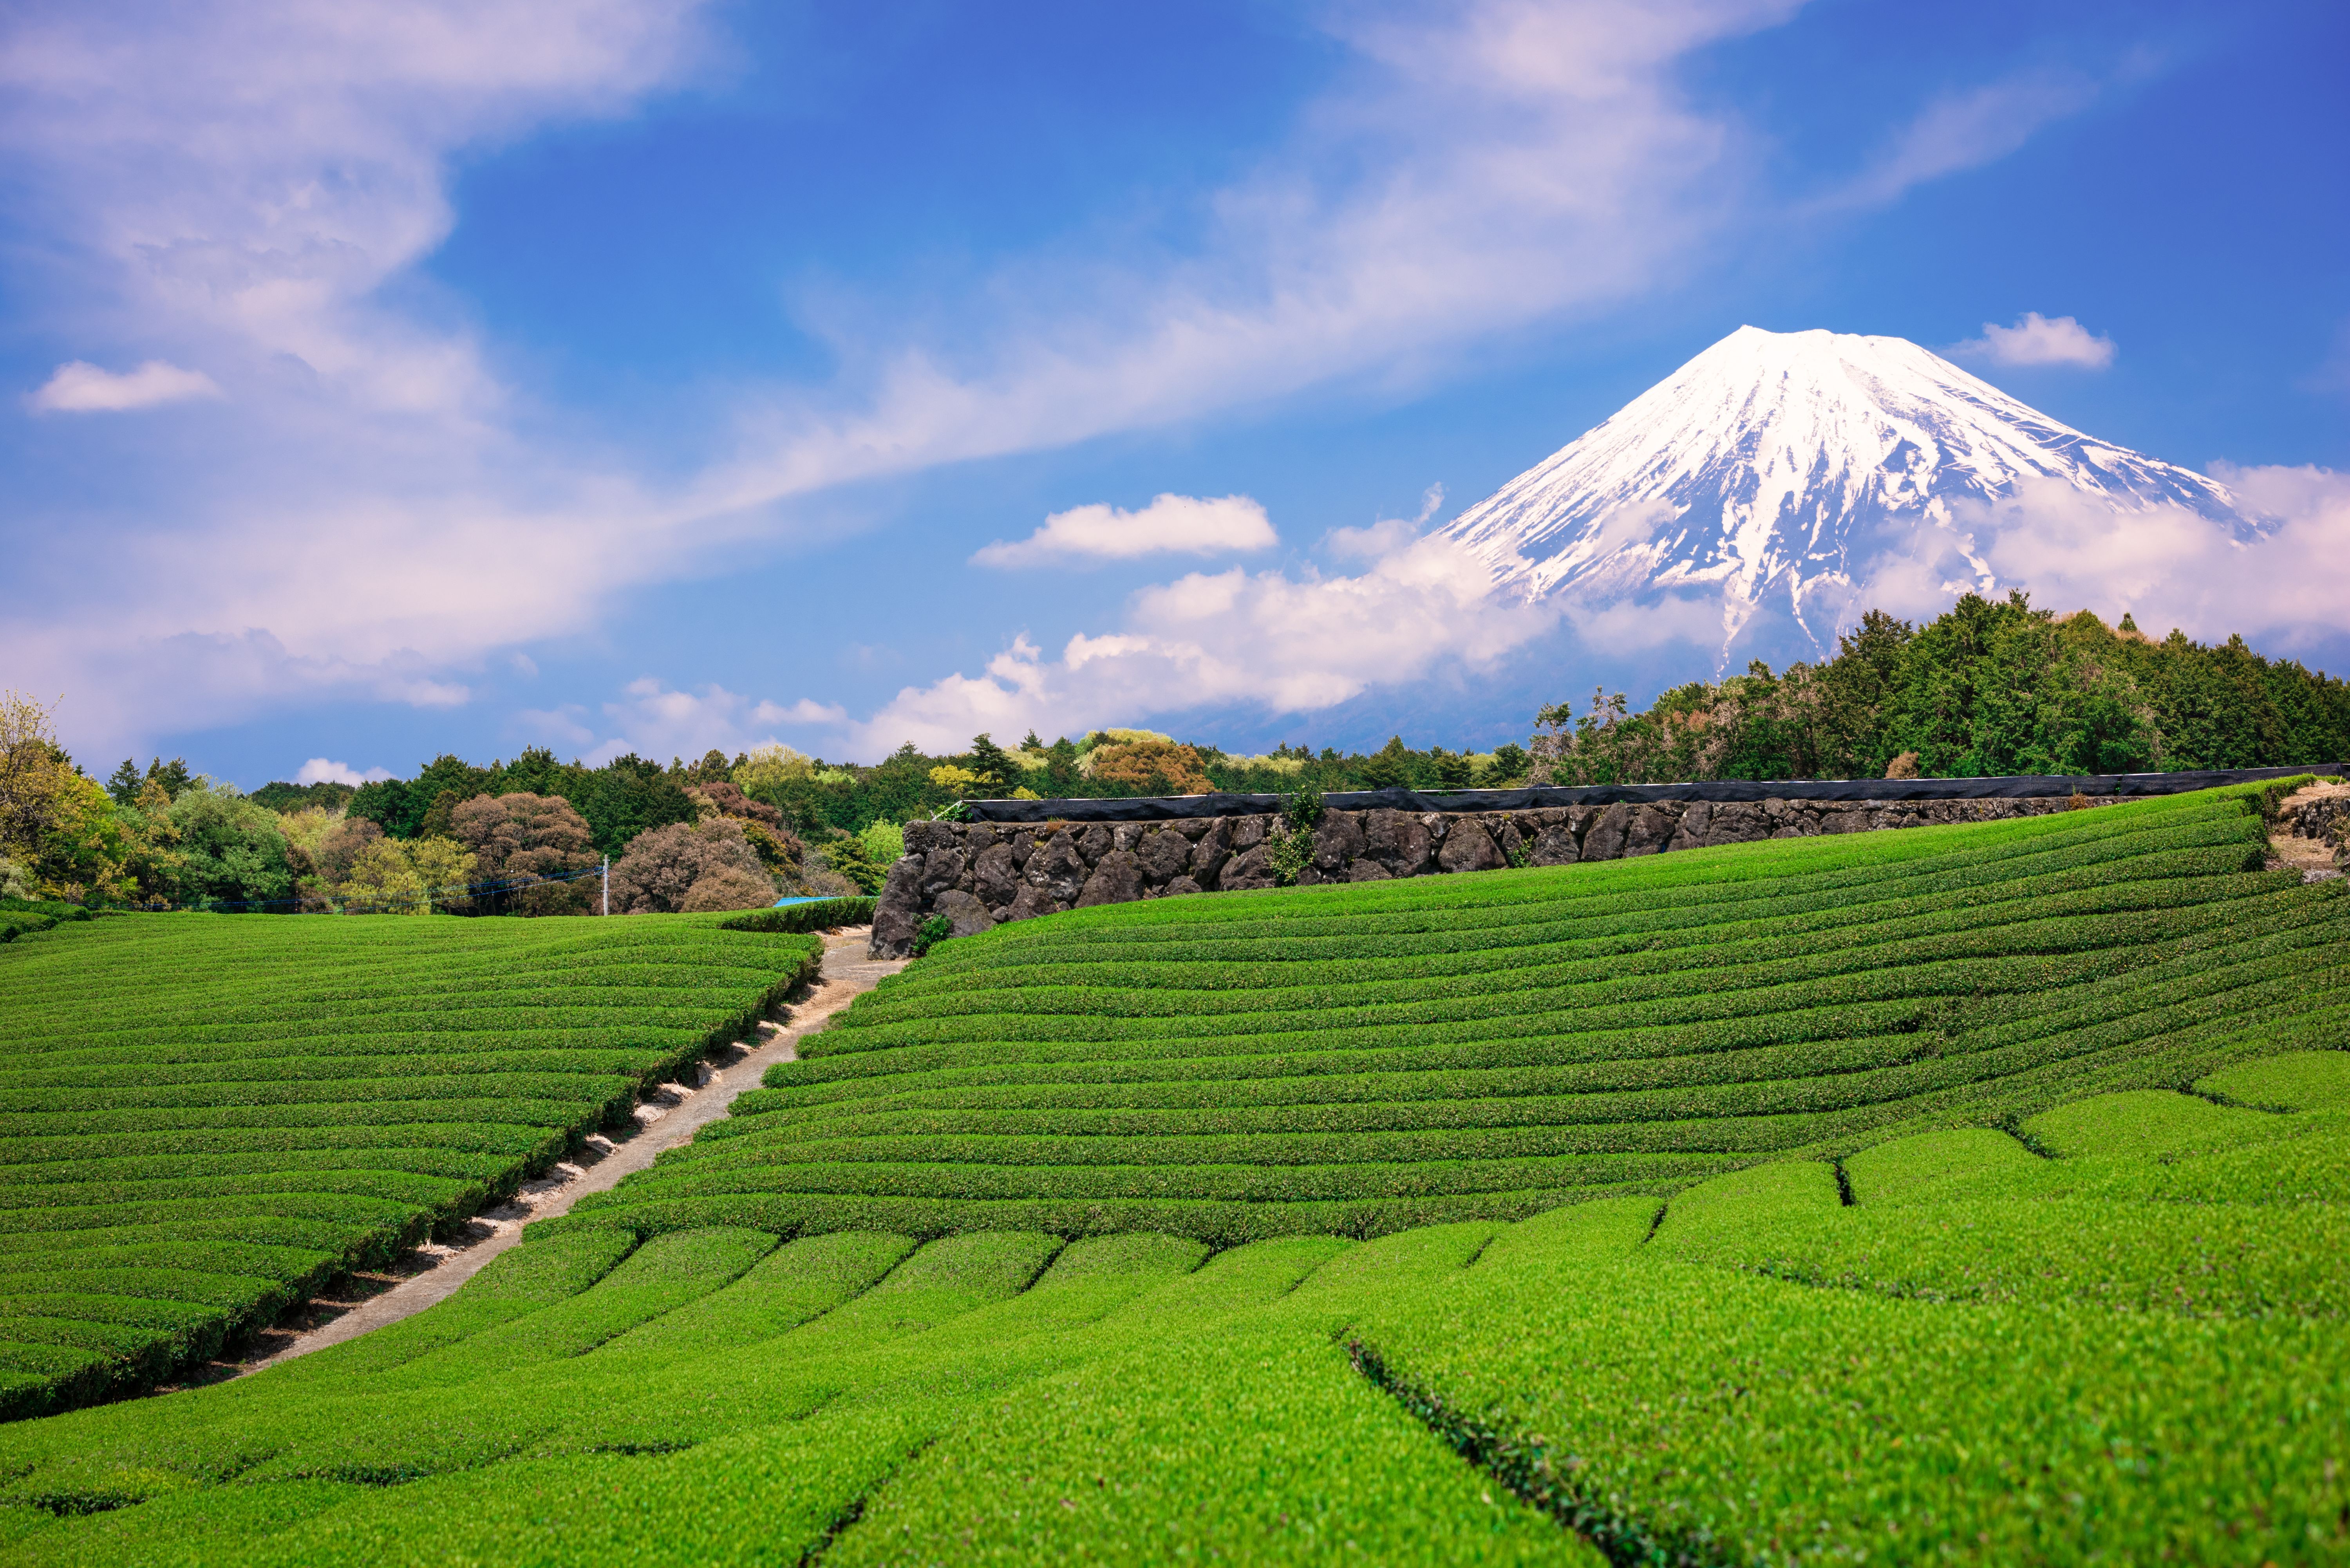 Bei Matcha handelt es sich um die Tee-Sorte Tencha, die auf Plantagen in Japan angebaut wird. Kurz vor der Ernte werden die Tee-Pflanzen abgedeckt, um ihre maximale Farbe und Nährstoffdichte zu erreichen.